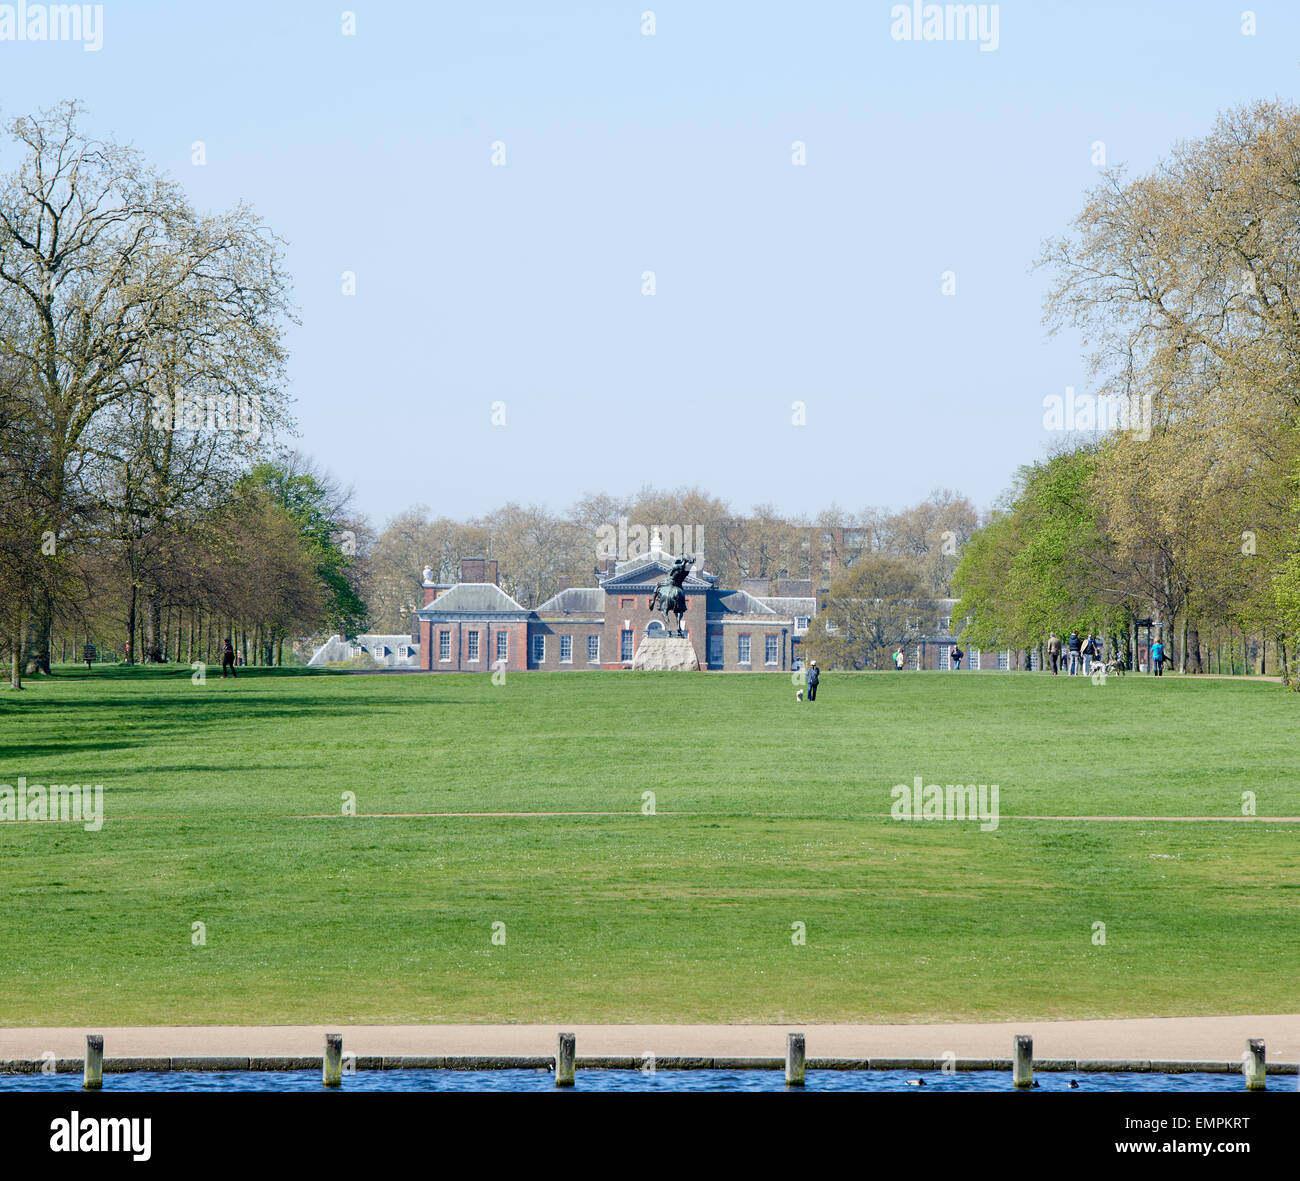 Londres, Reino Unido - 22 de abril: El Palacio de Kensington visto desde el lago Serpentine en un soleado día de primavera, con George Frederic Watts's equin Foto de stock